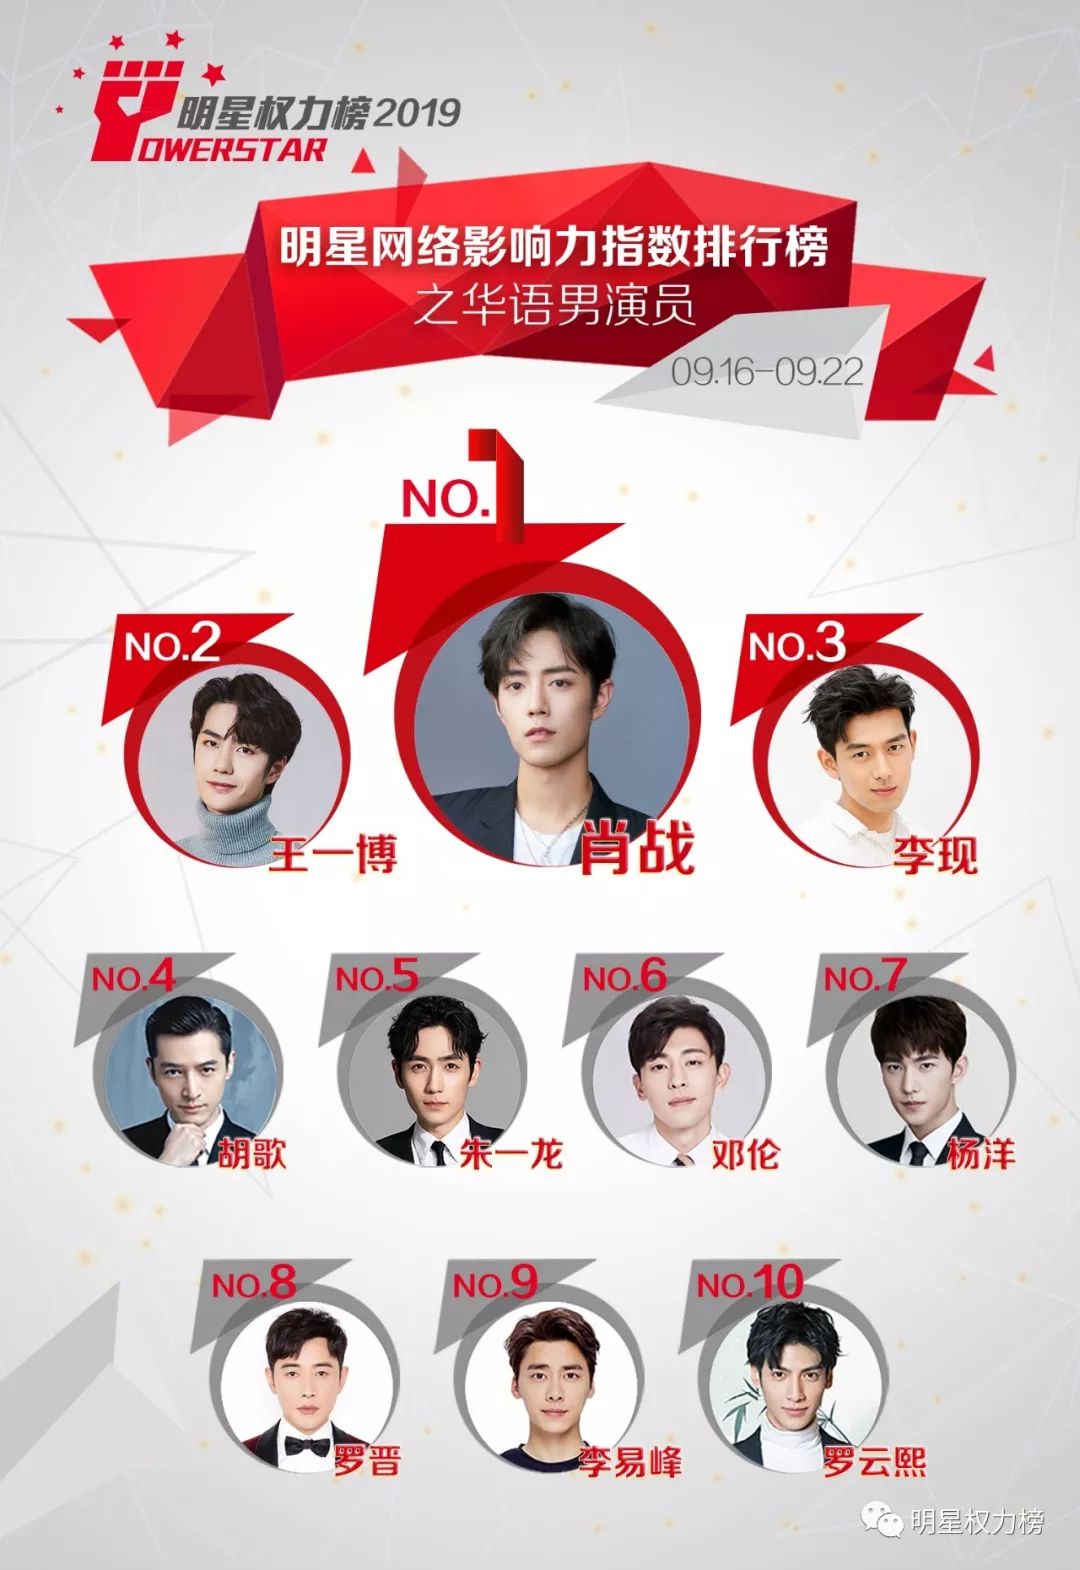 明星网络影响力指数排行榜第218期榜单之华语男演员Top10